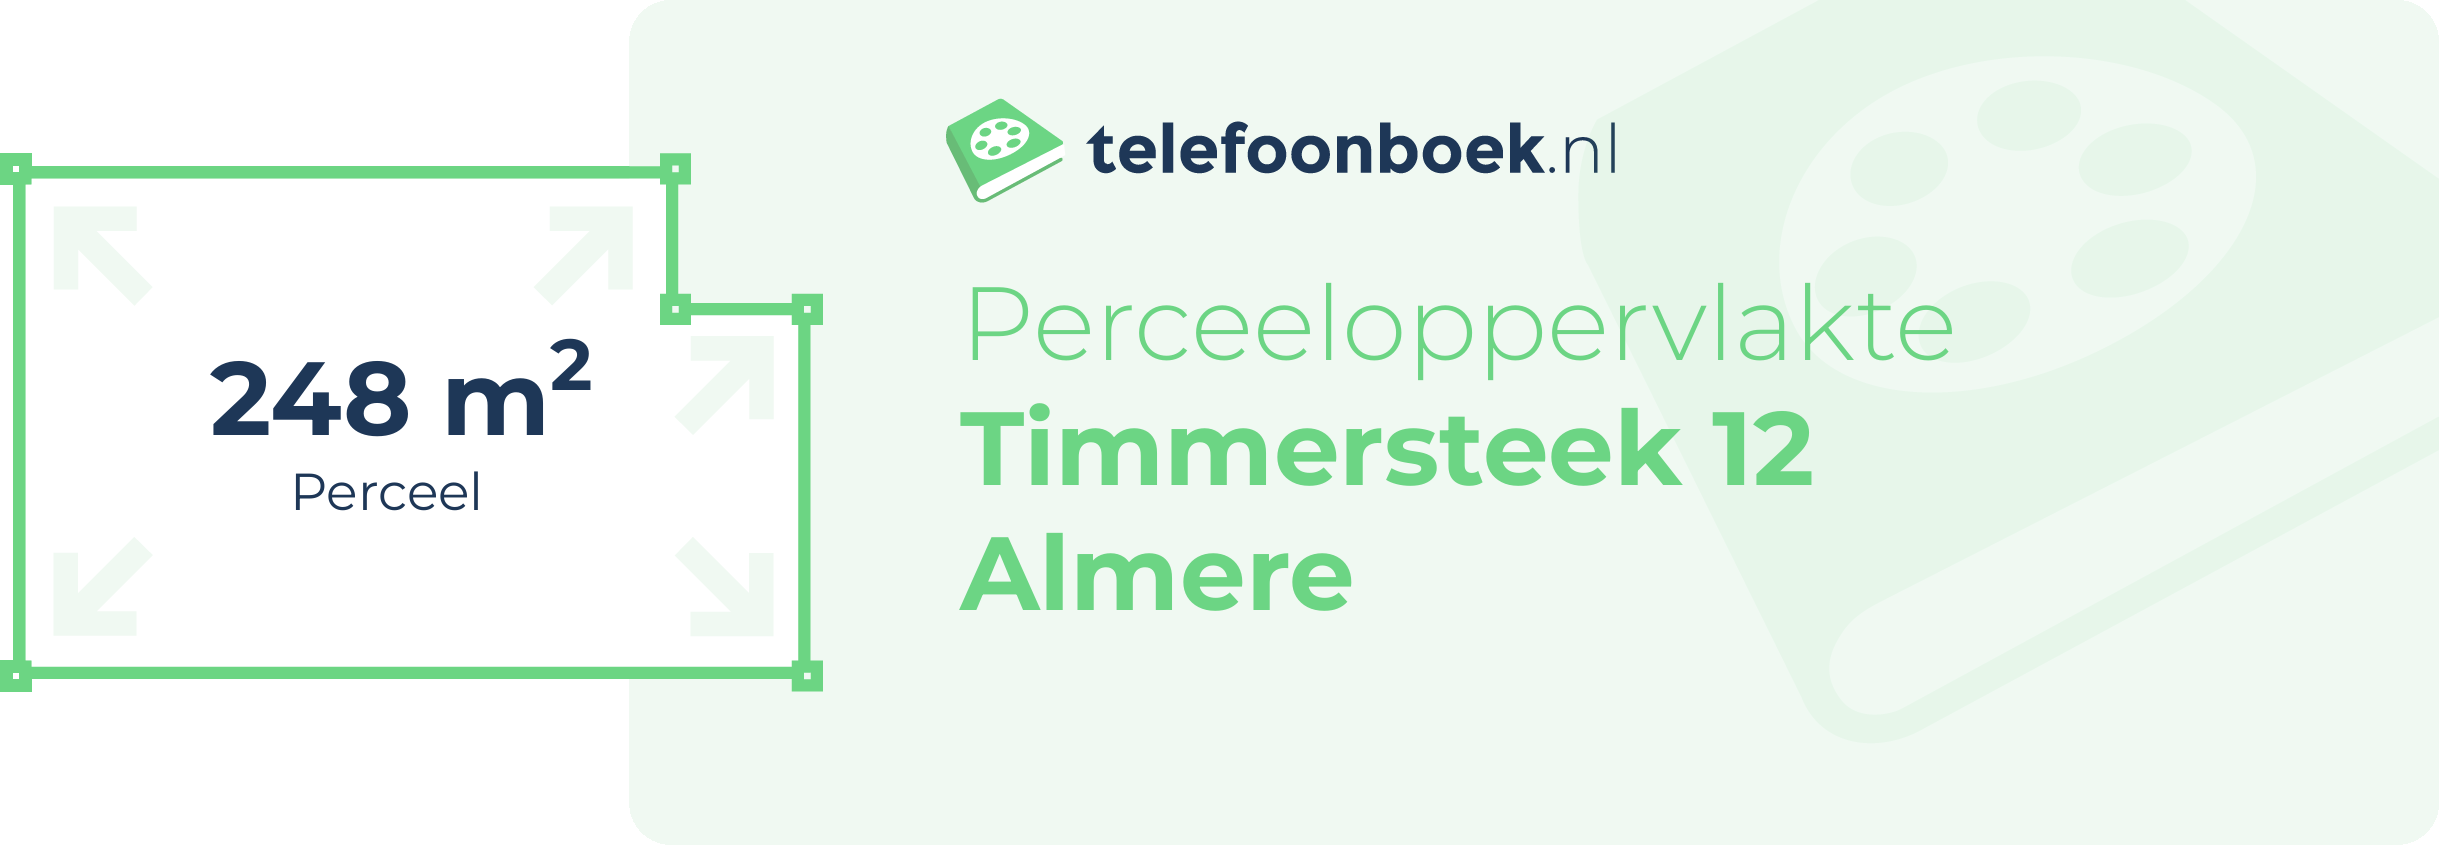 Perceeloppervlakte Timmersteek 12 Almere